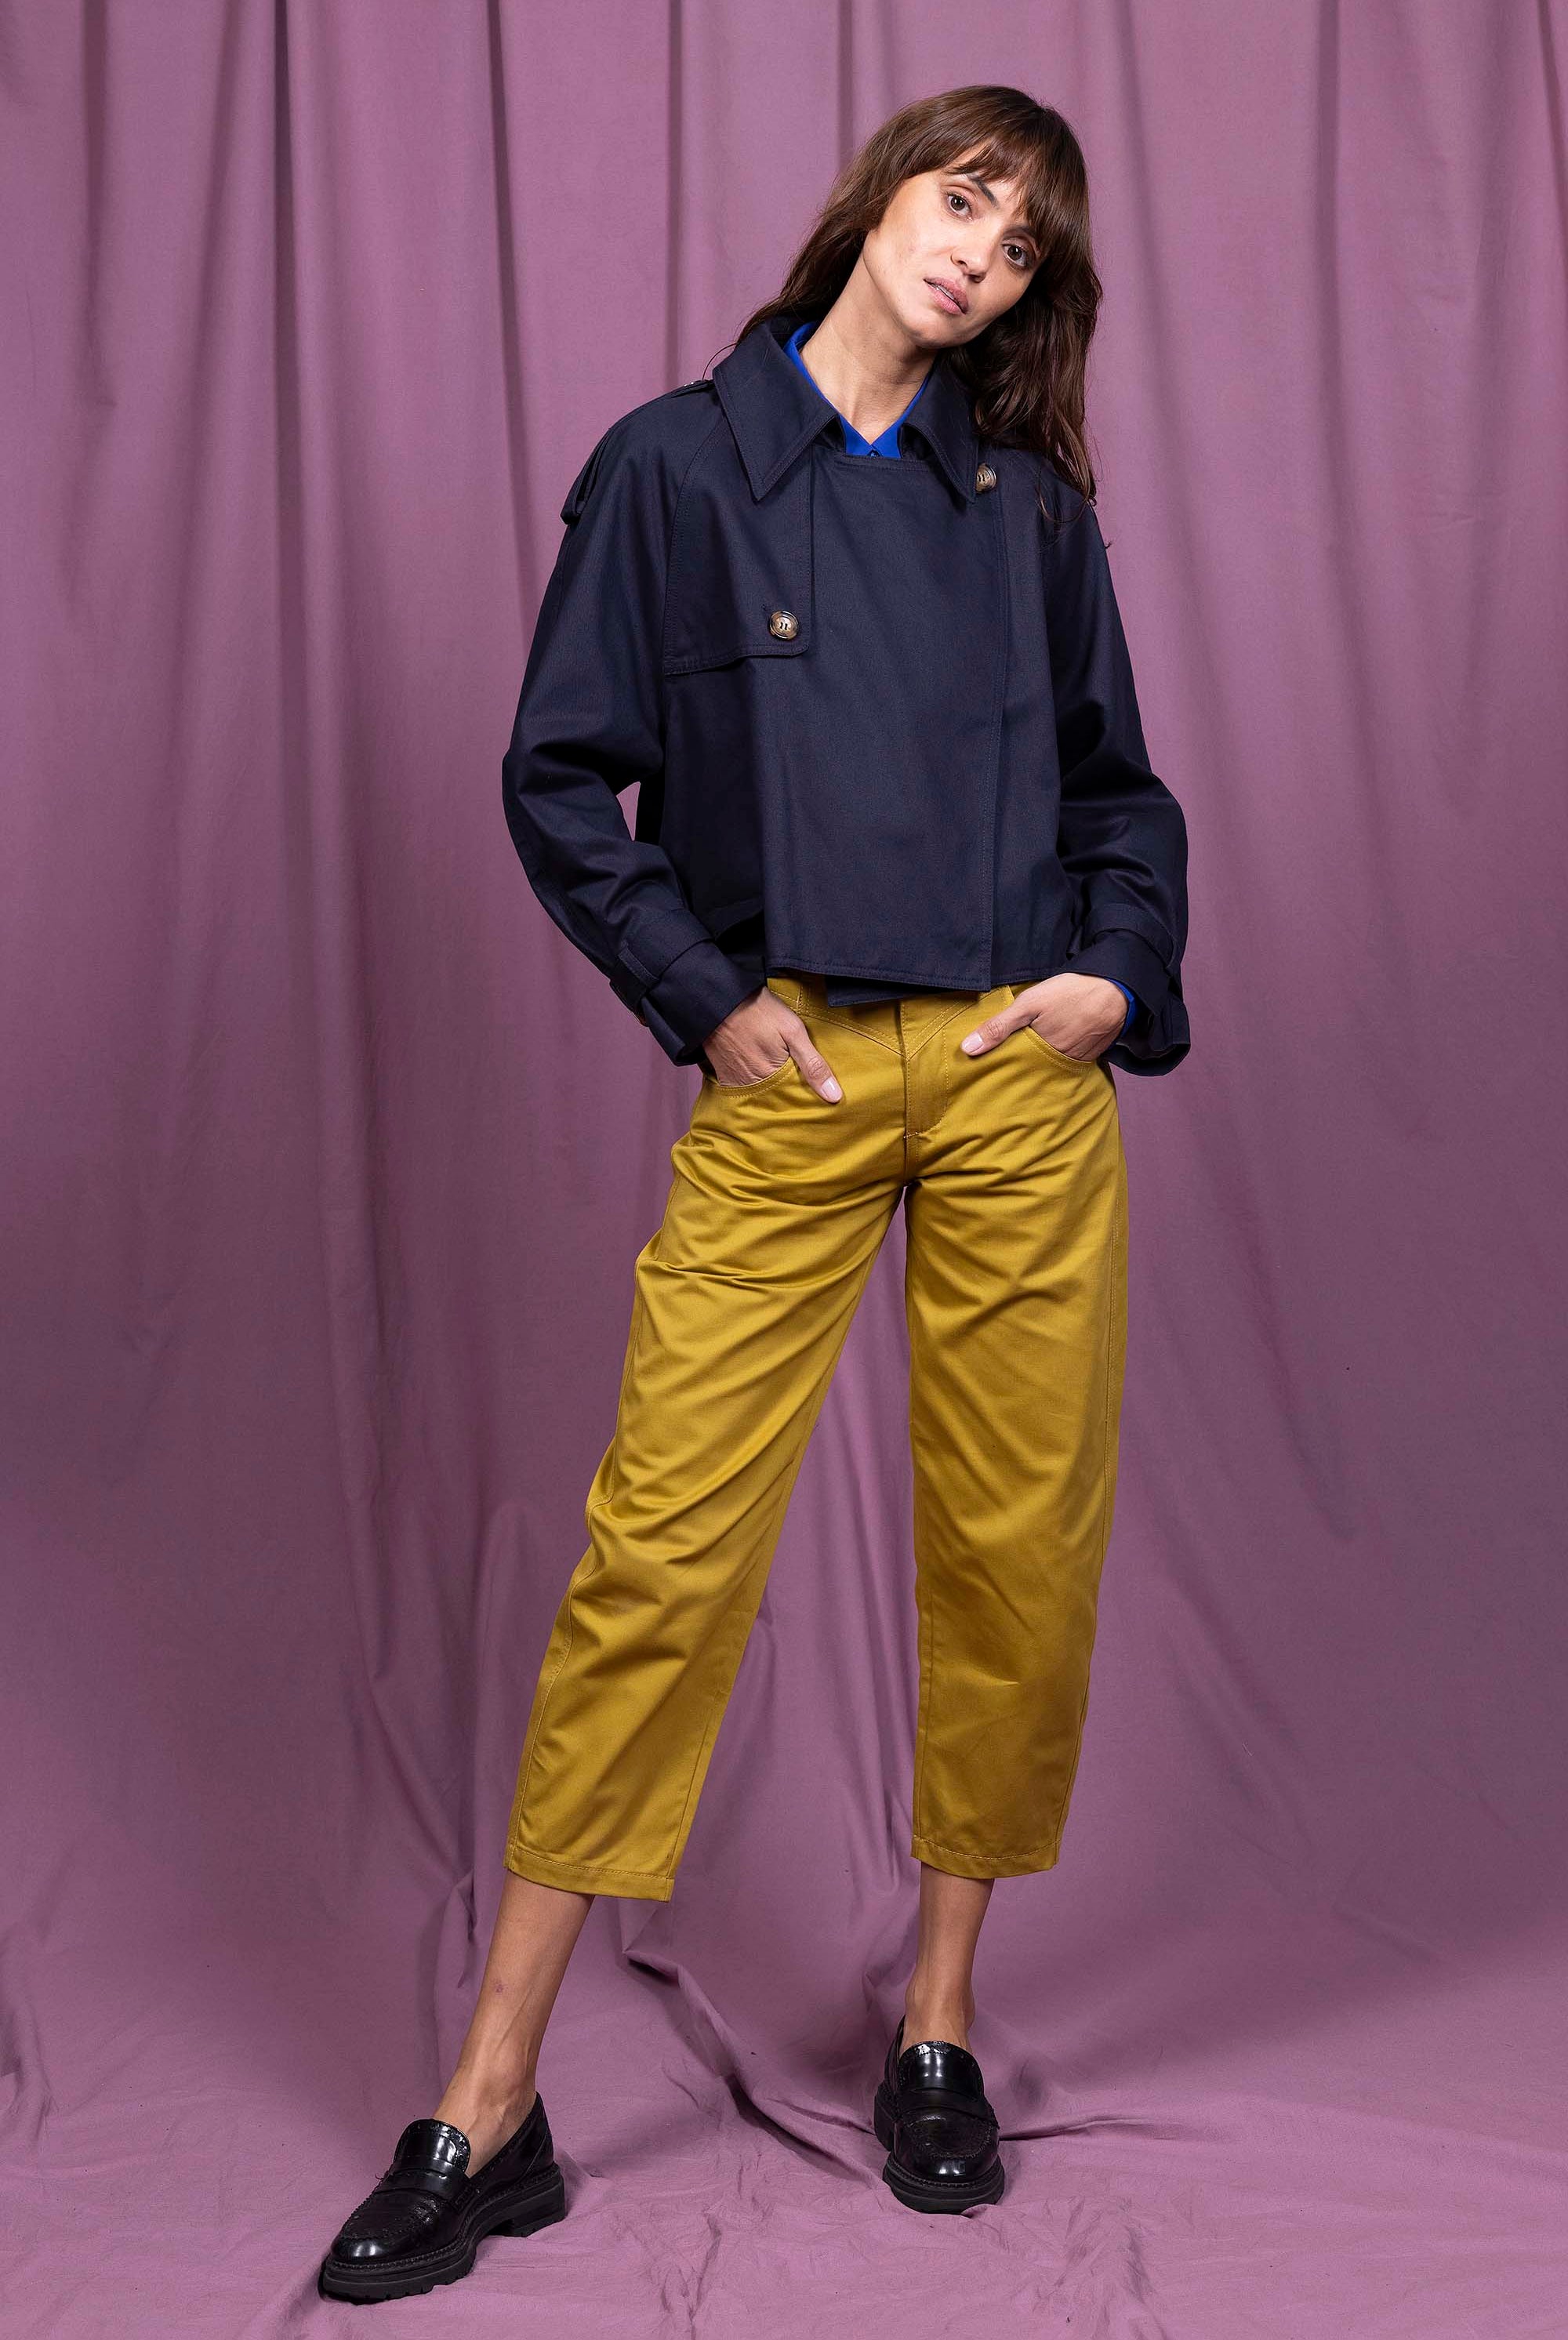 Veste Carlina Bleu Marine esthétique intemporelle et confortable silhouette avec élégance ligne minimaliste